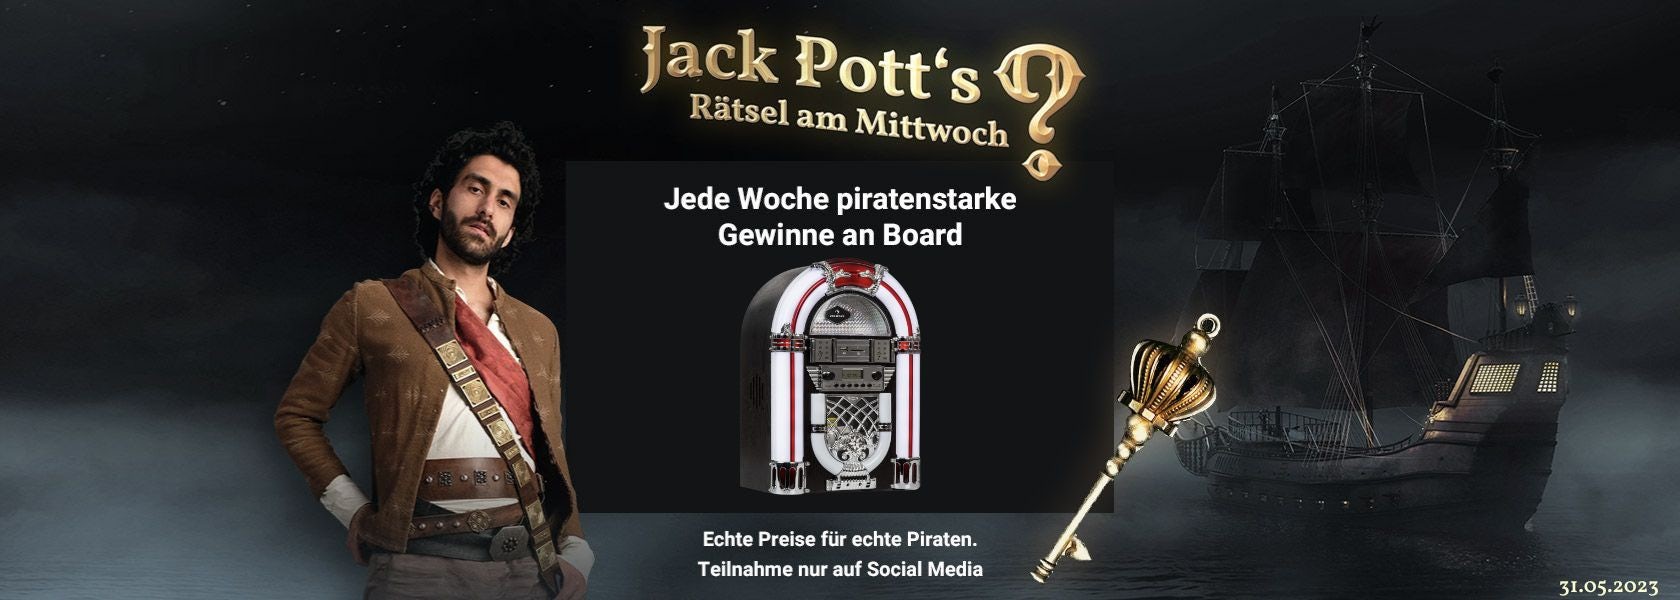 JPI-Header-Jack-Potts-Rätsel-Am-Mittwoch-3105